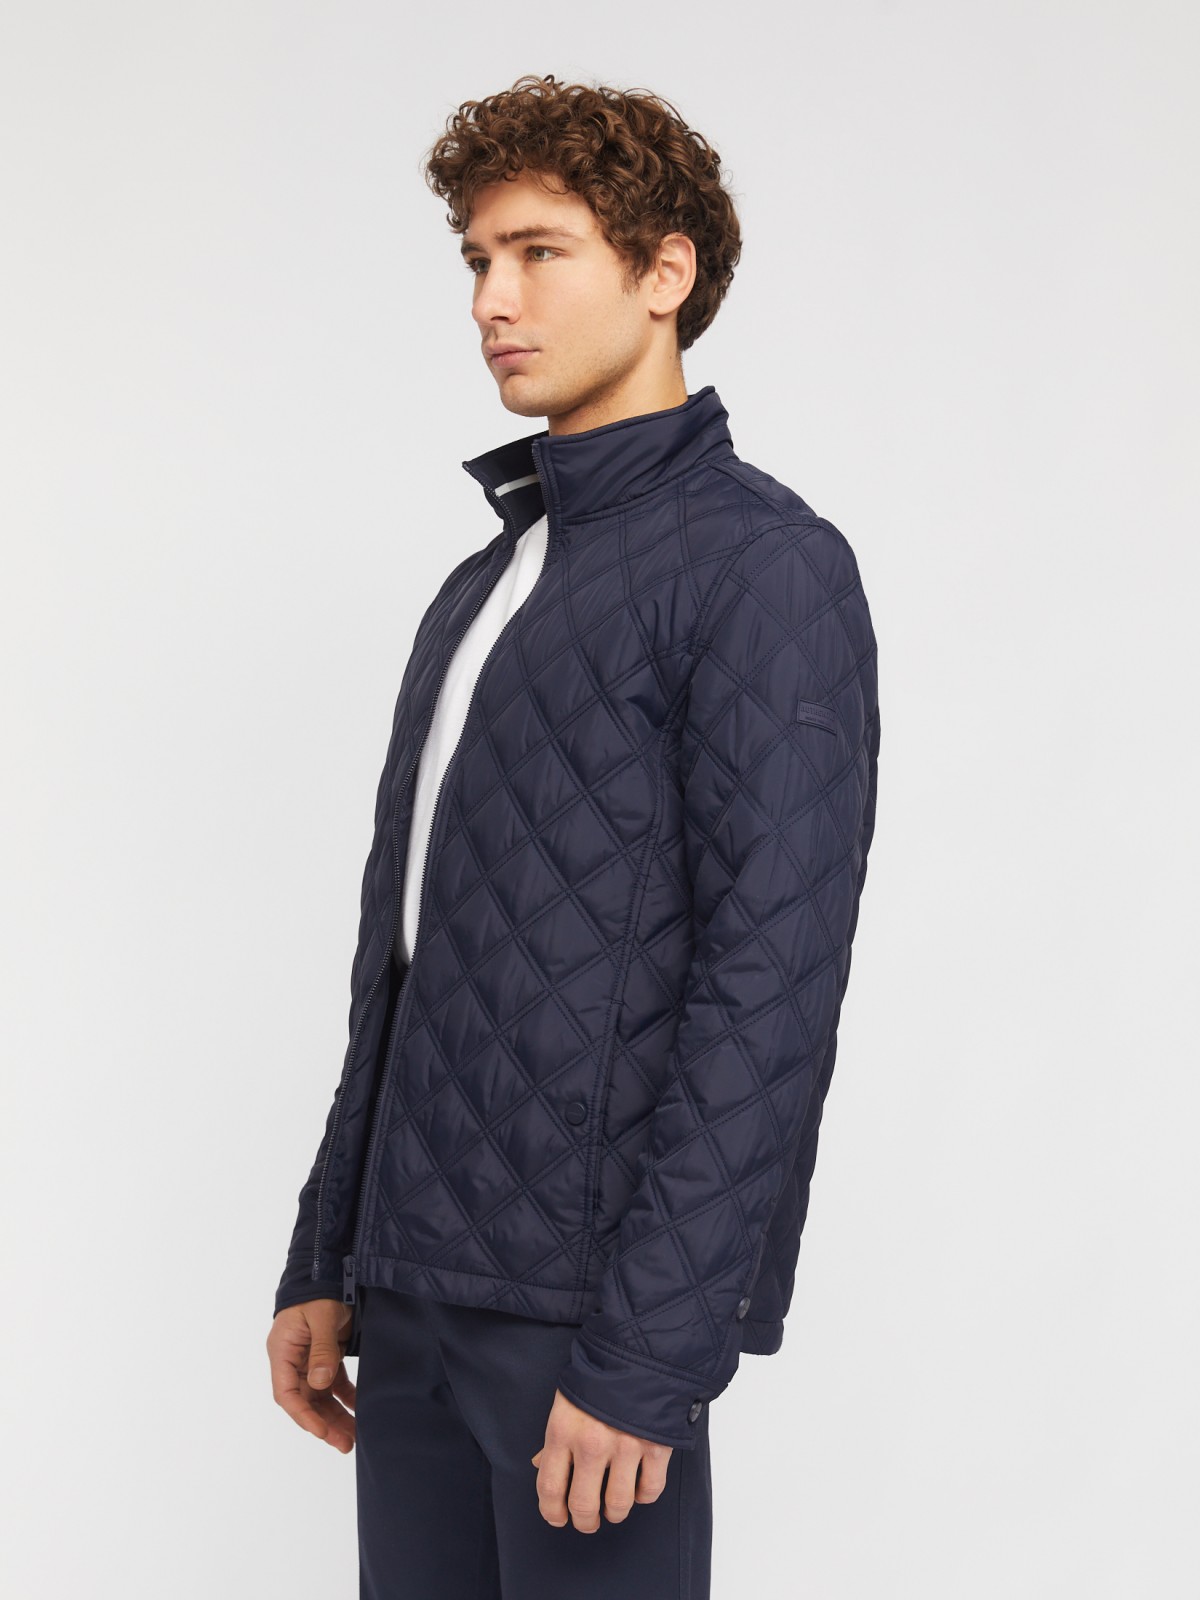 Утеплённая куртка на молнии с воротником-стойкой zolla 014135159124, цвет темно-синий, размер M - фото 4